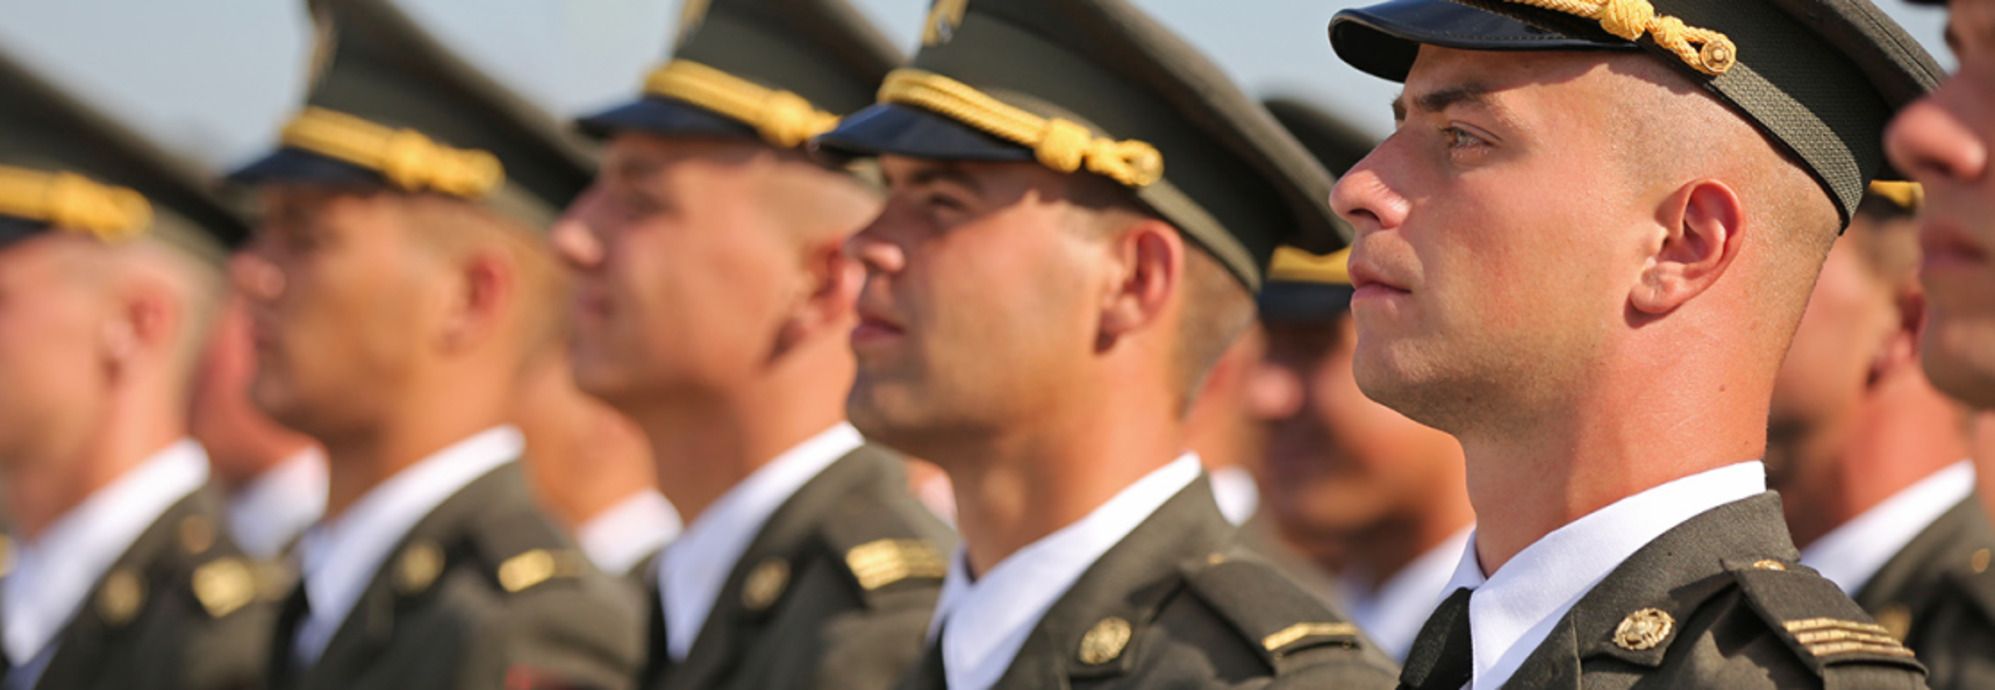 Сержант ВСУ - назначат ли сержантов без высшего образования на офицерские должности - 24 Канал - Образование